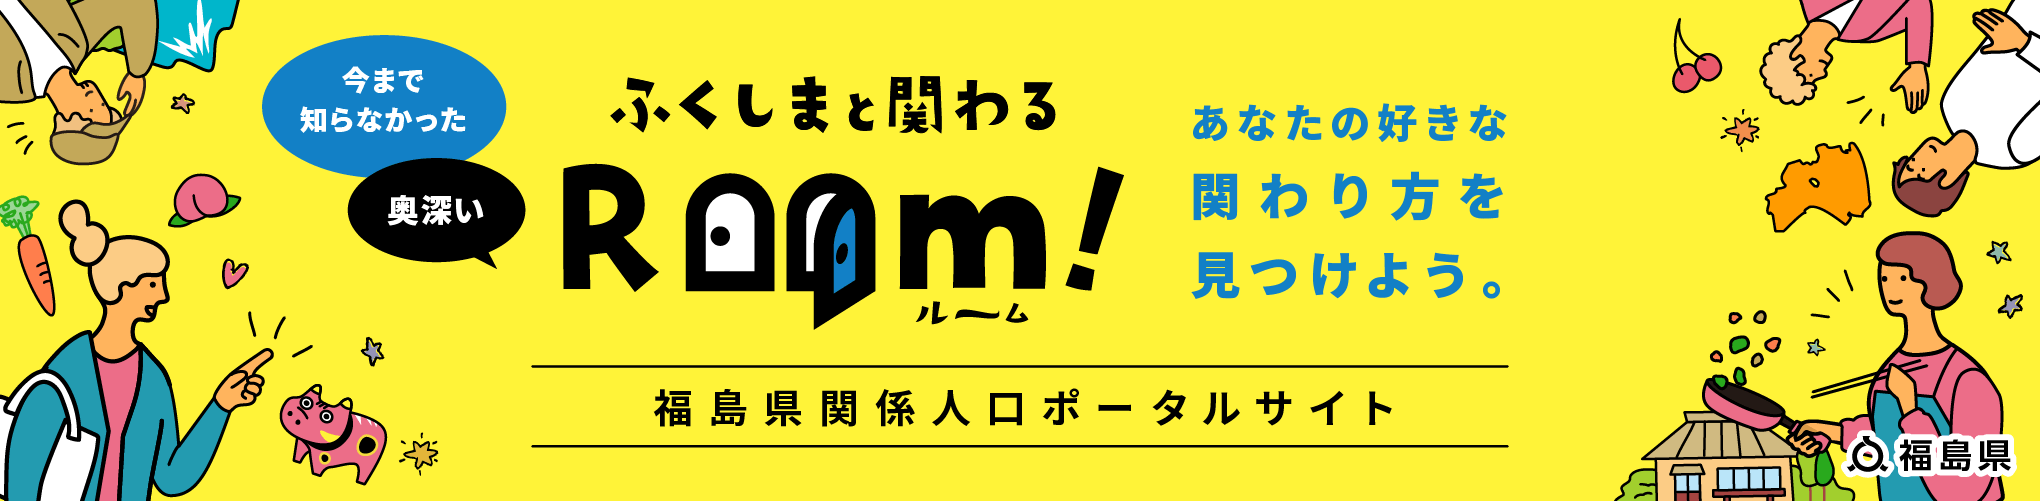 福島県関係人口ポータルサイト ふくしまと関わる Room!